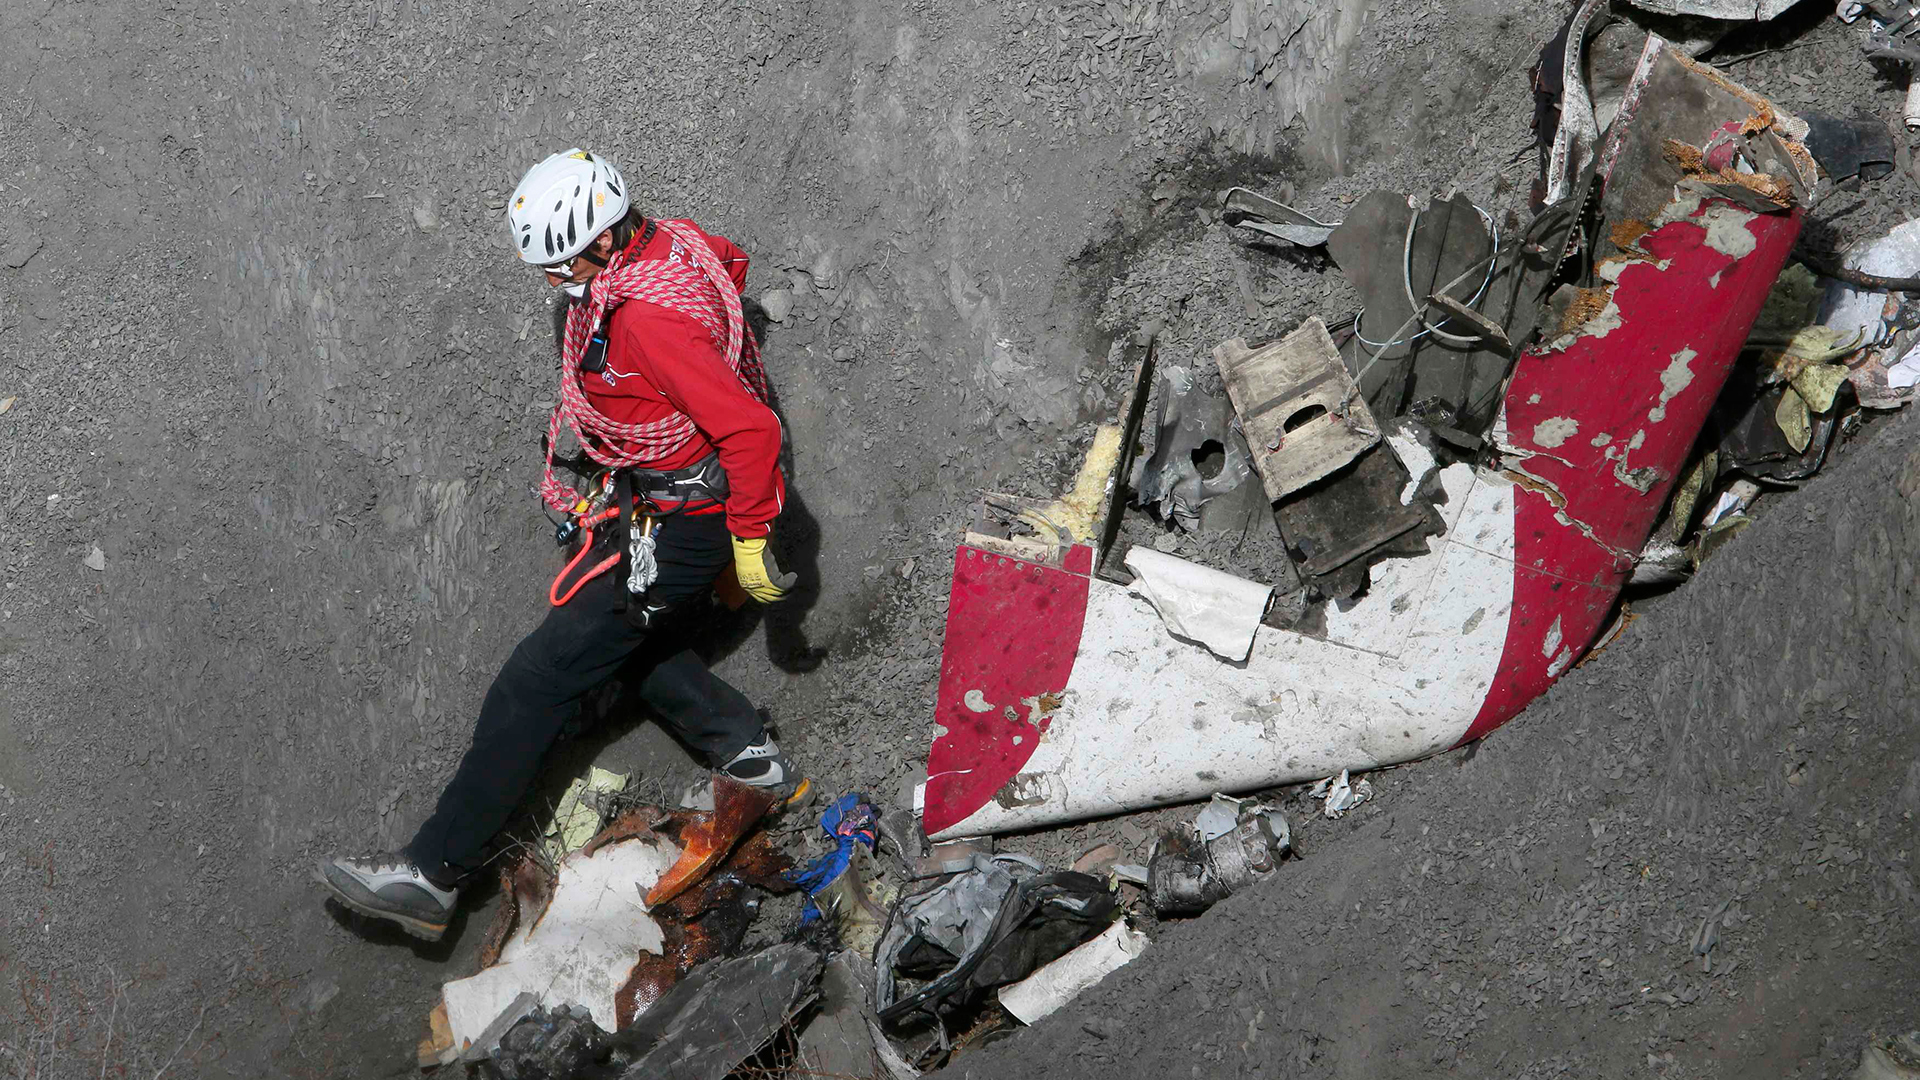 Un monumento recordará a las víctimas del avión de Germanwings dos años después de la tragedia 1